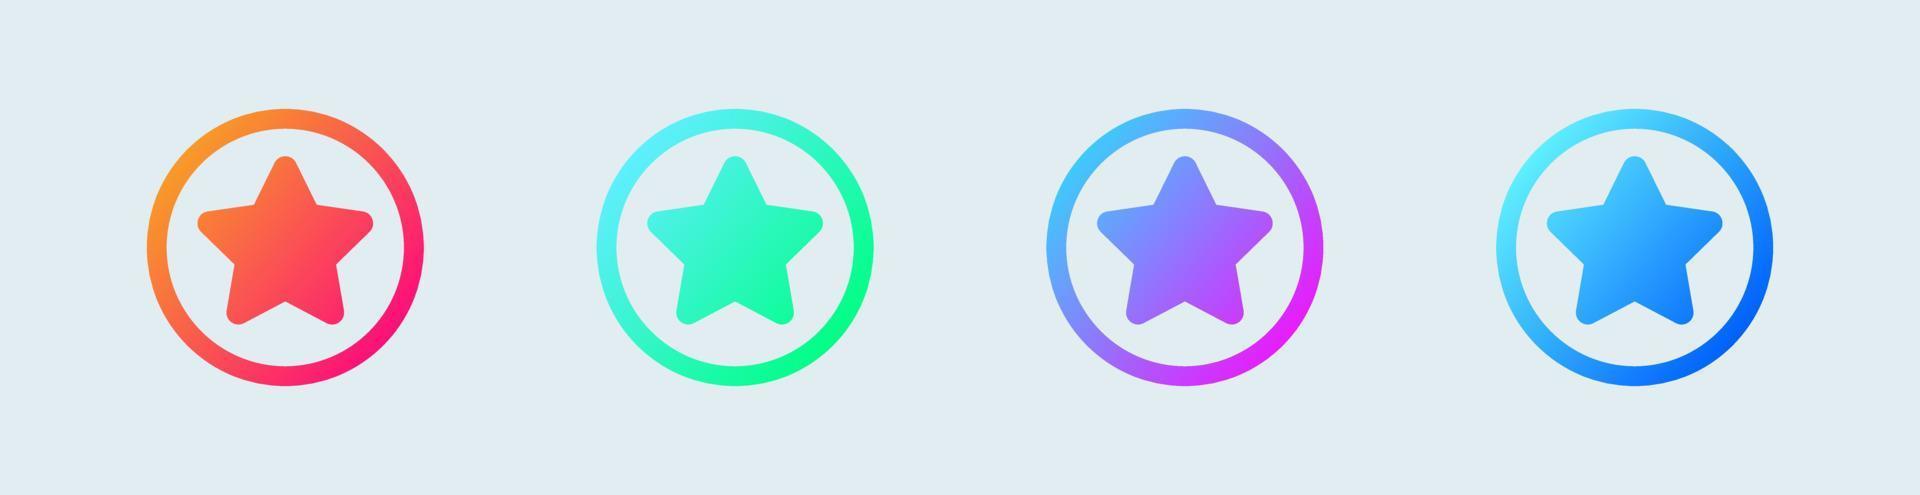 icône d'étoiles définie dans des couleurs de cercle et de dégradé. icône de vecteur d'interface utilisateur.